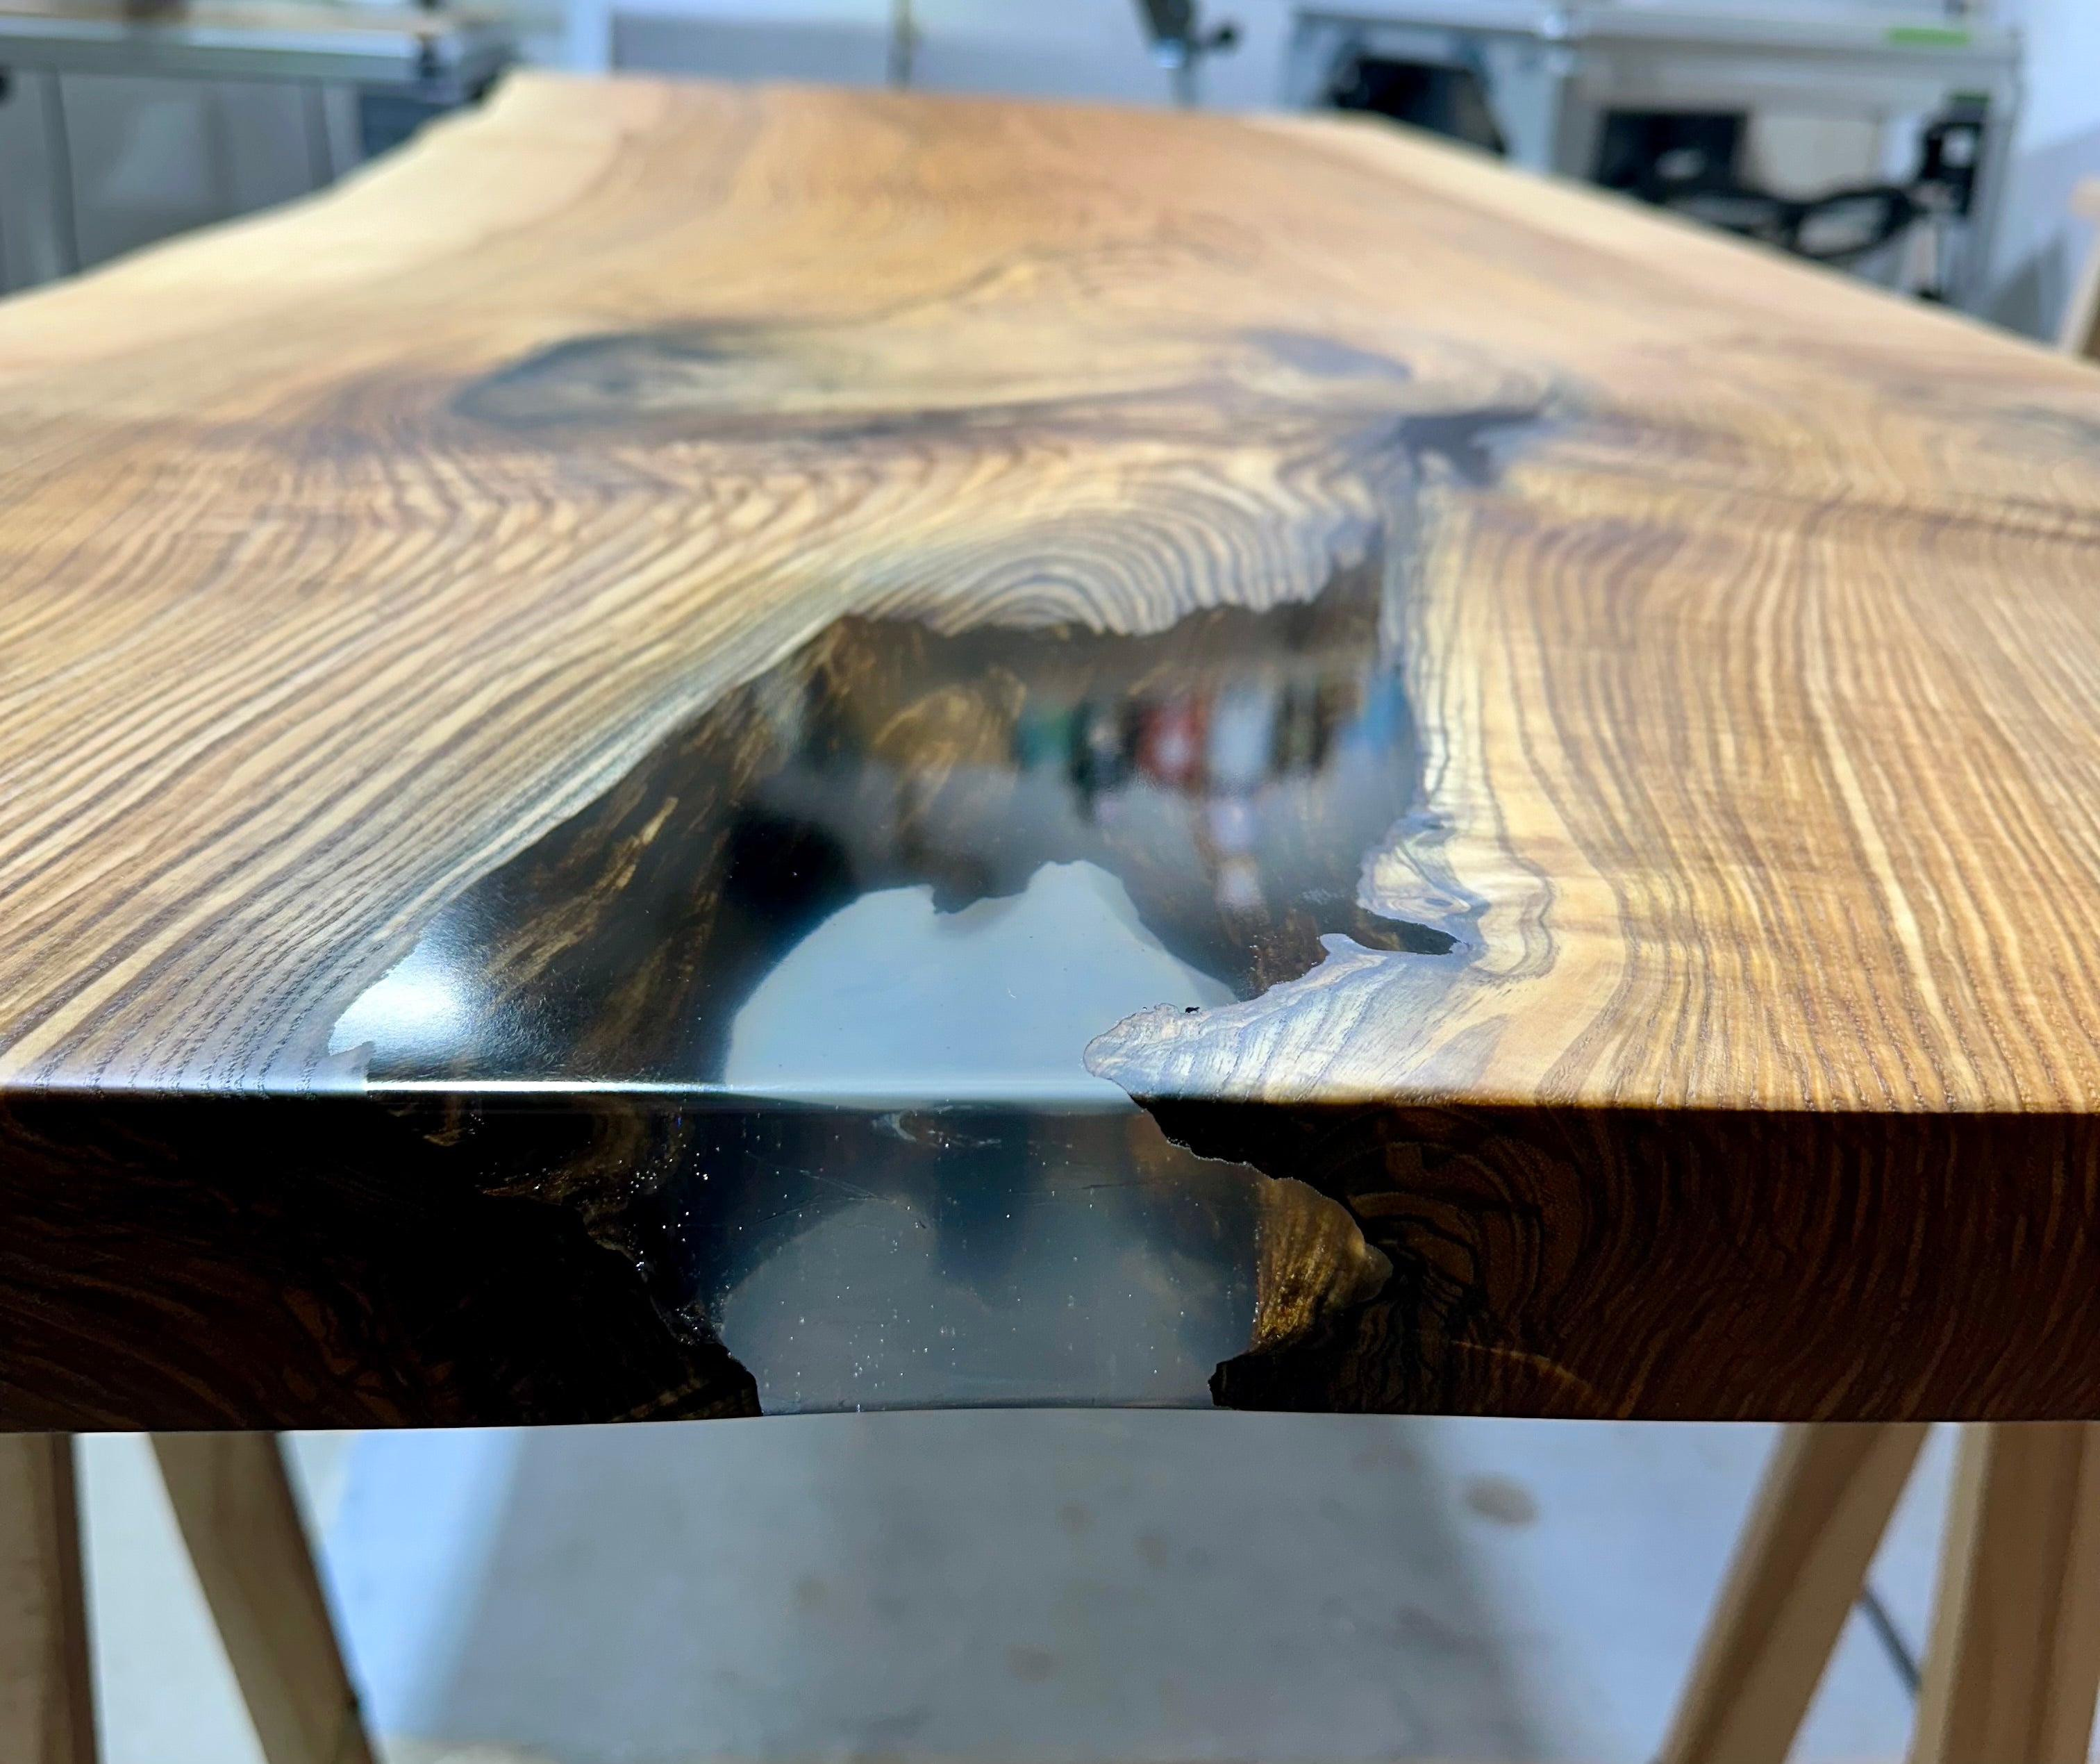 180 cm Edel Esche Baumstamm Tischplatte Holzplatte 5 cm massiv als Schreibtisch oder Esstisch verwendbar